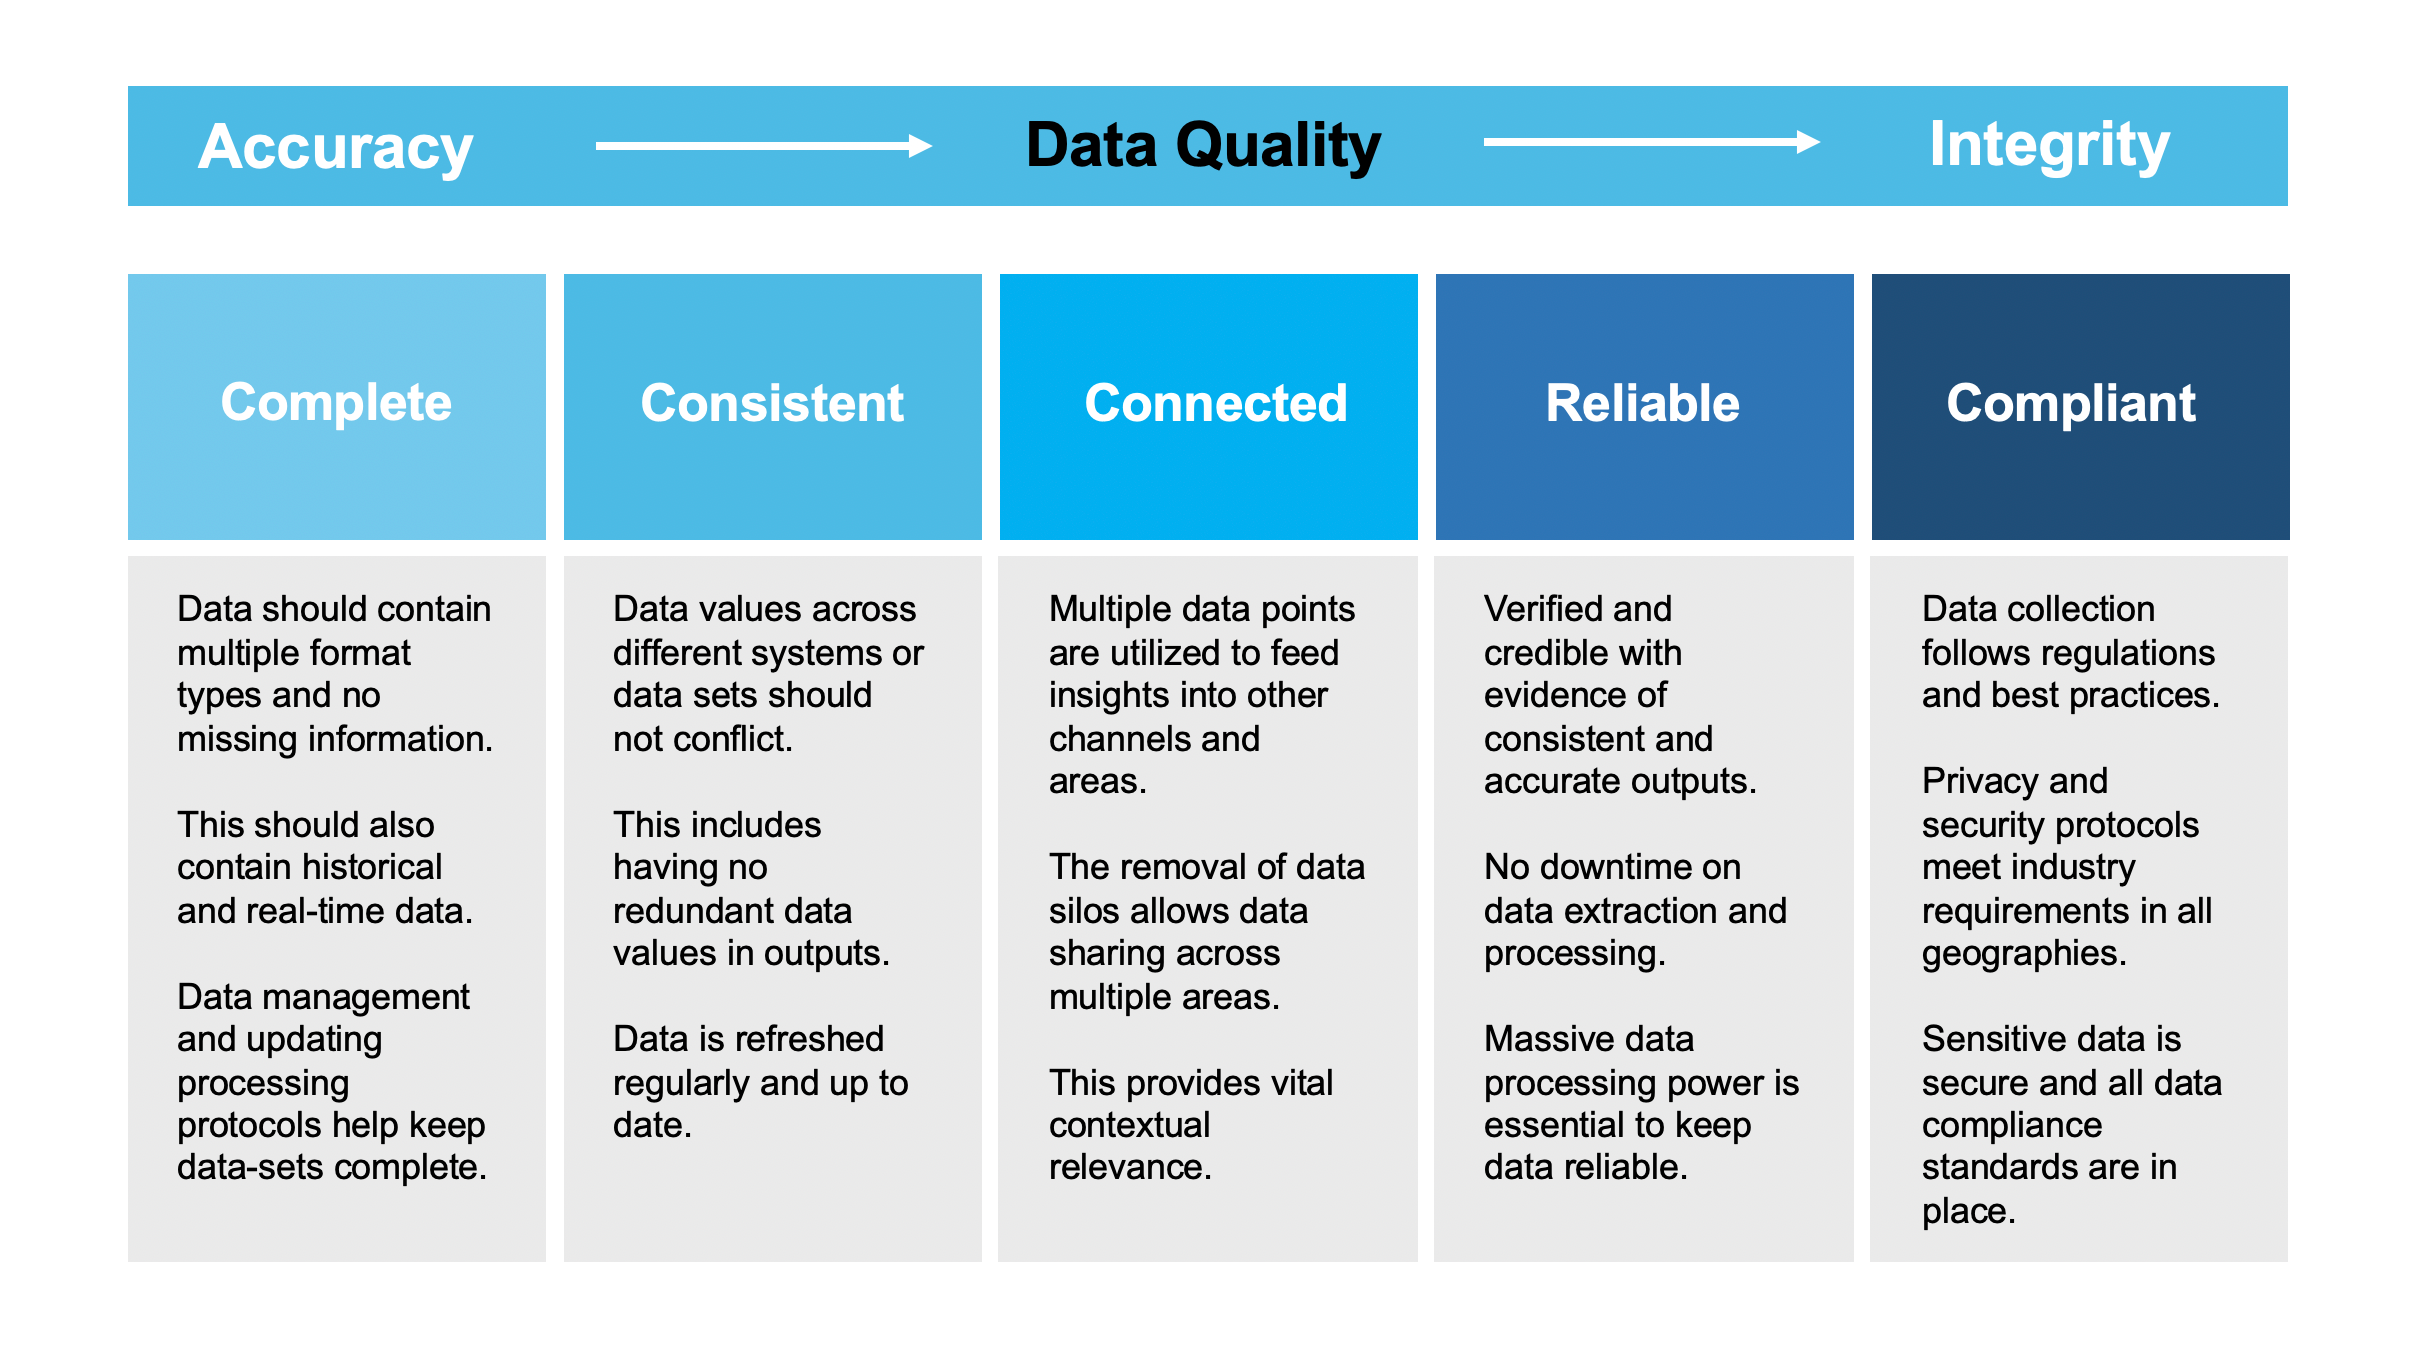 Data Quality characteristics